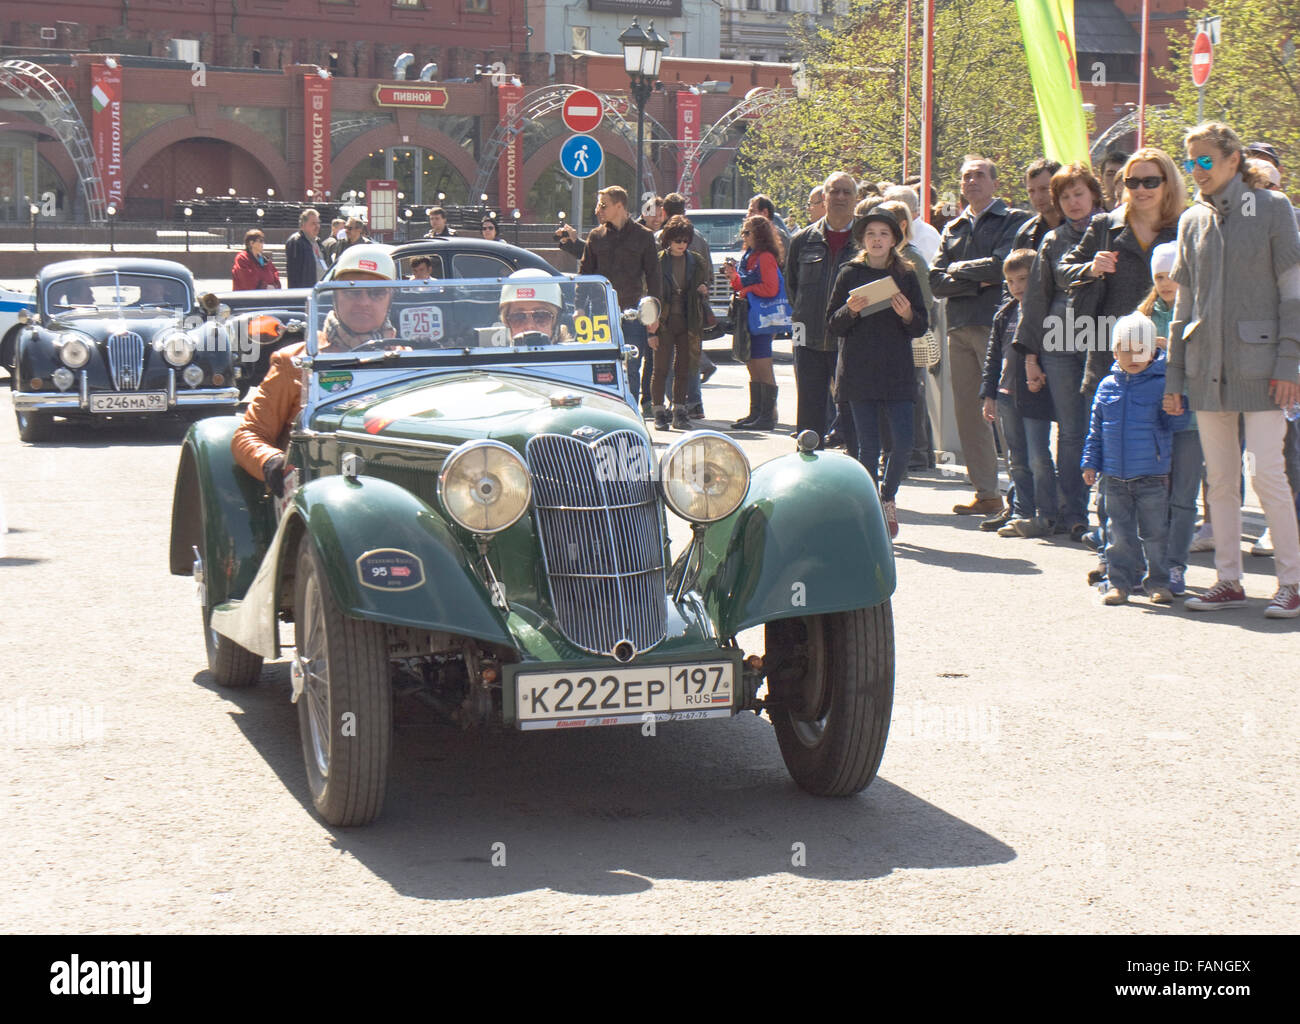 Moskau - 27. April 2014: Retro-Auto Willys von 1936 im Rallye von klassischen Autos, organisiert von russischen Club der klassischen Autoca Stockfoto